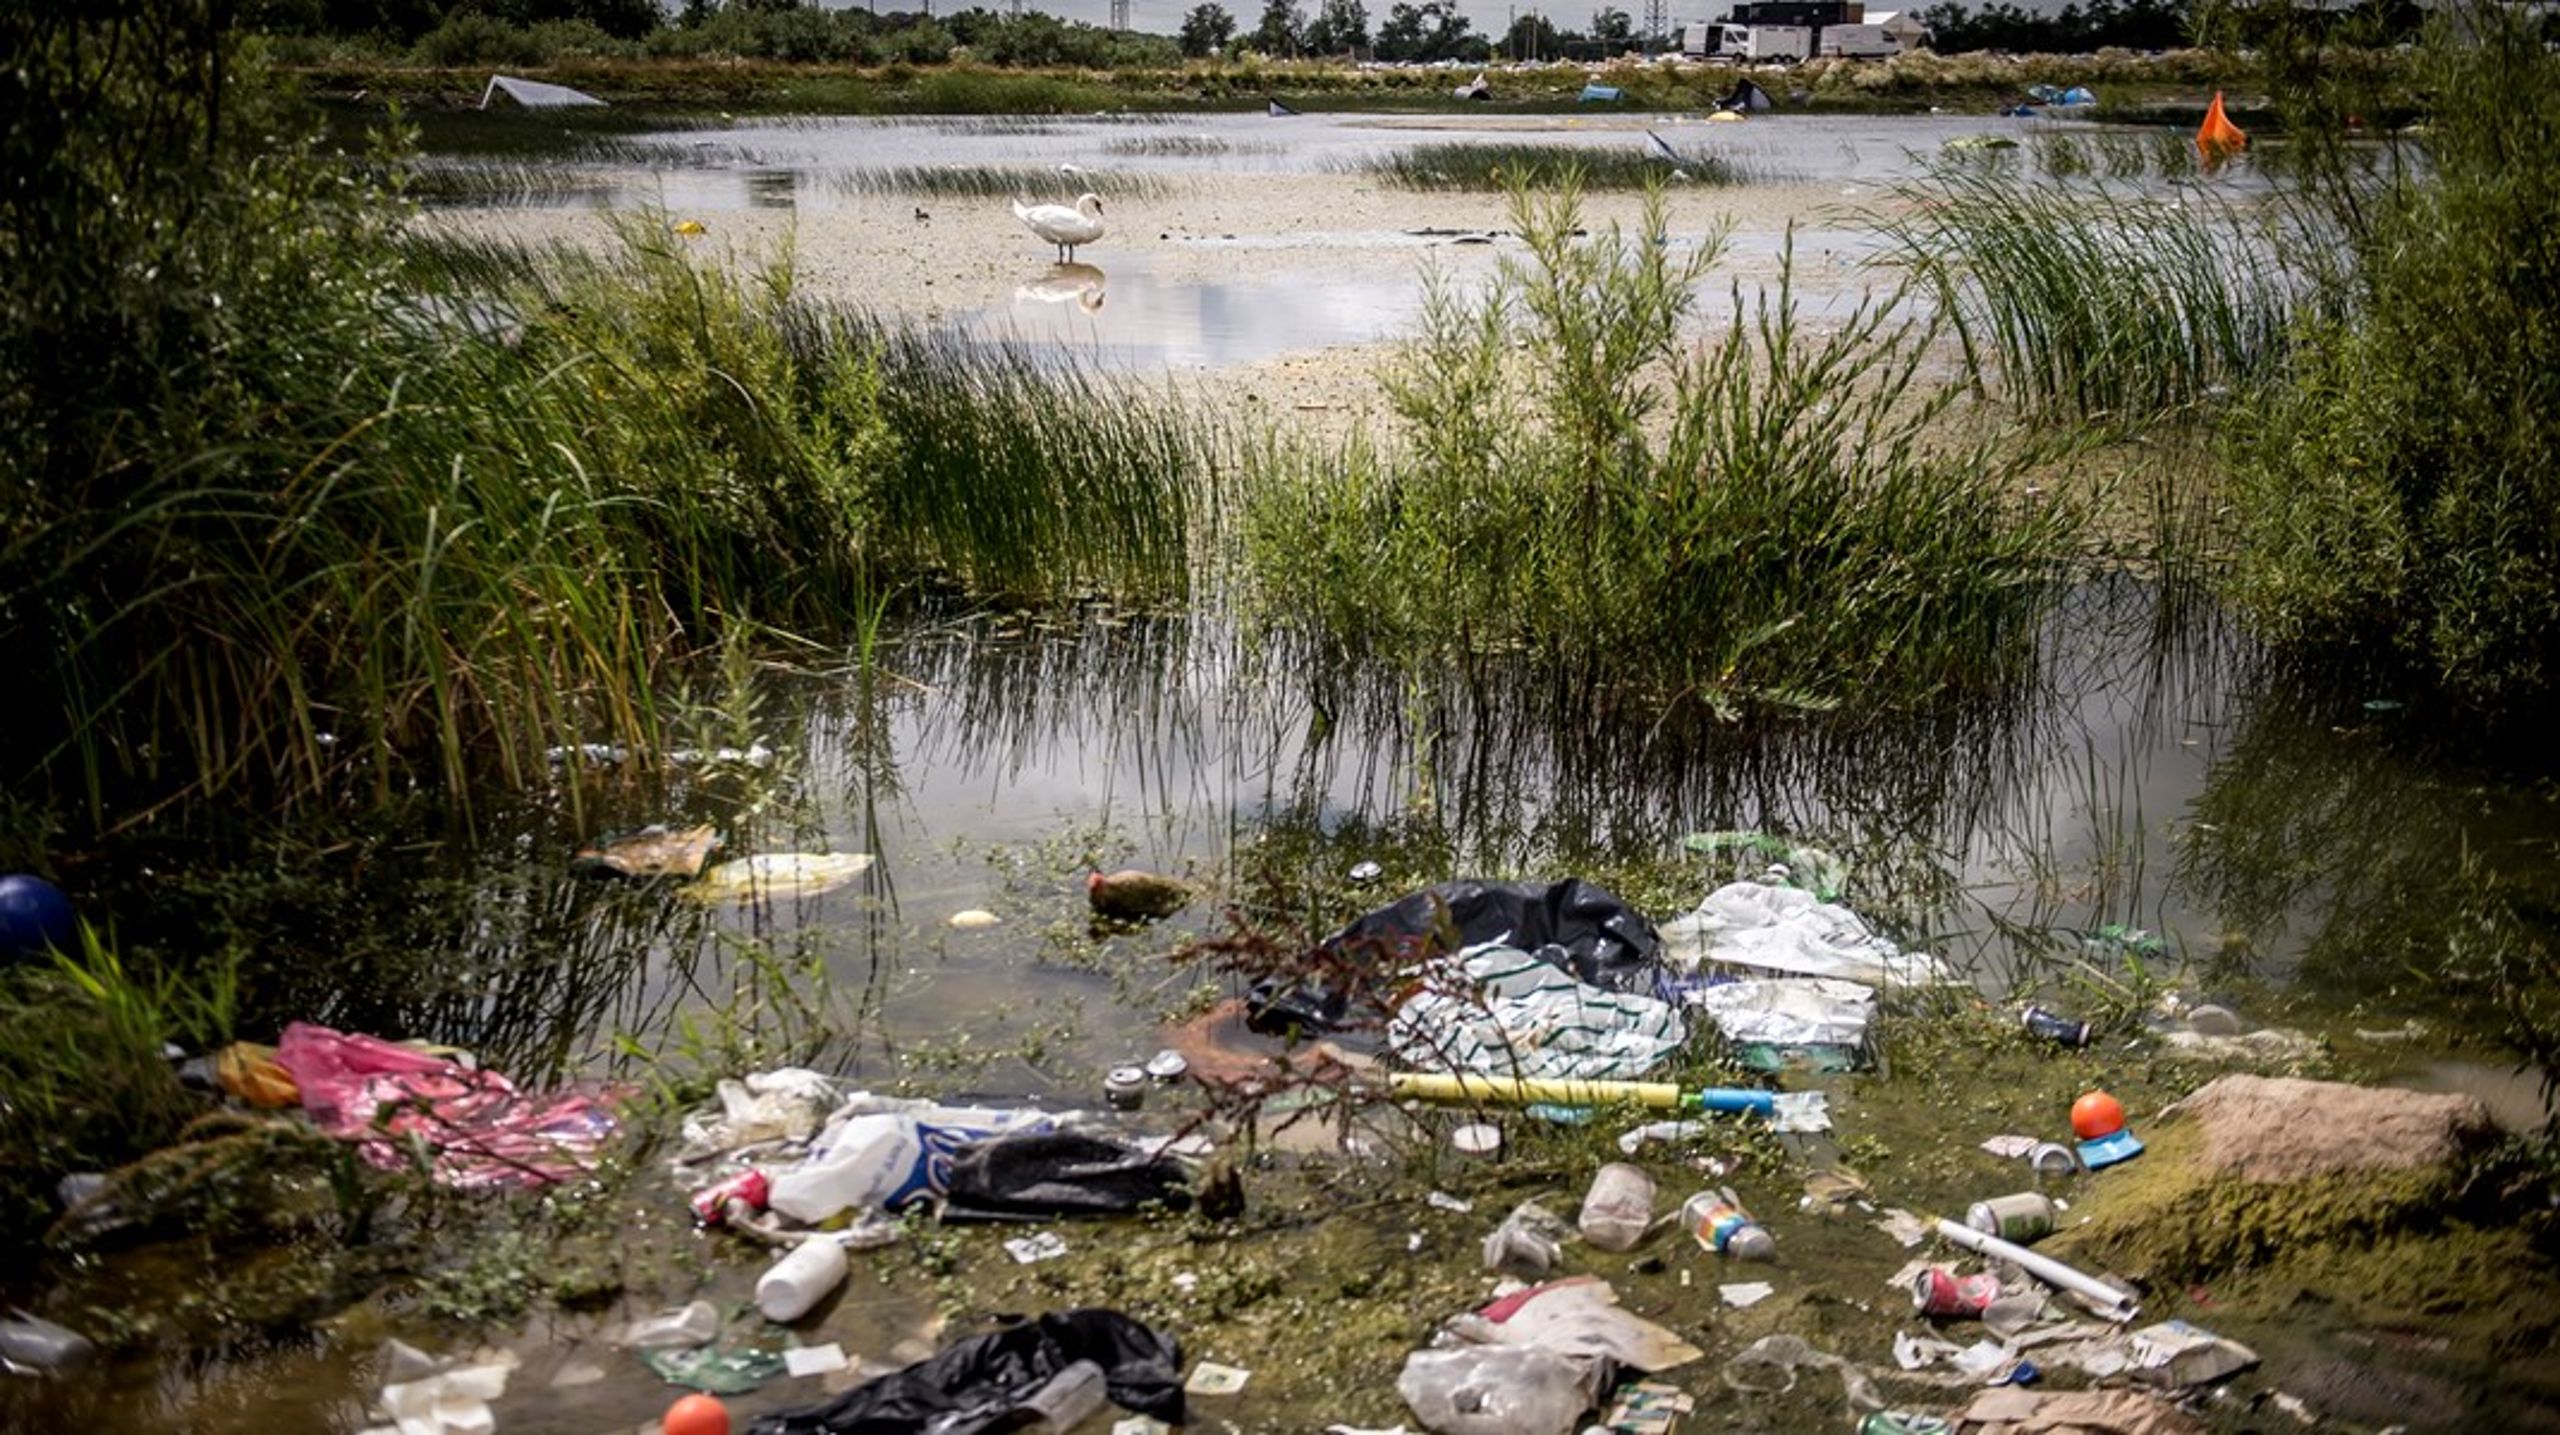 Plastikforurening udgør et af de største globale miljøproblemer i vores tid, og det går den forkerte vej. I 2030 anslås det, at mængden af plastik på vores planet vil være fordoblet, skriver Lea Wermelin og Anne Aittomaki.